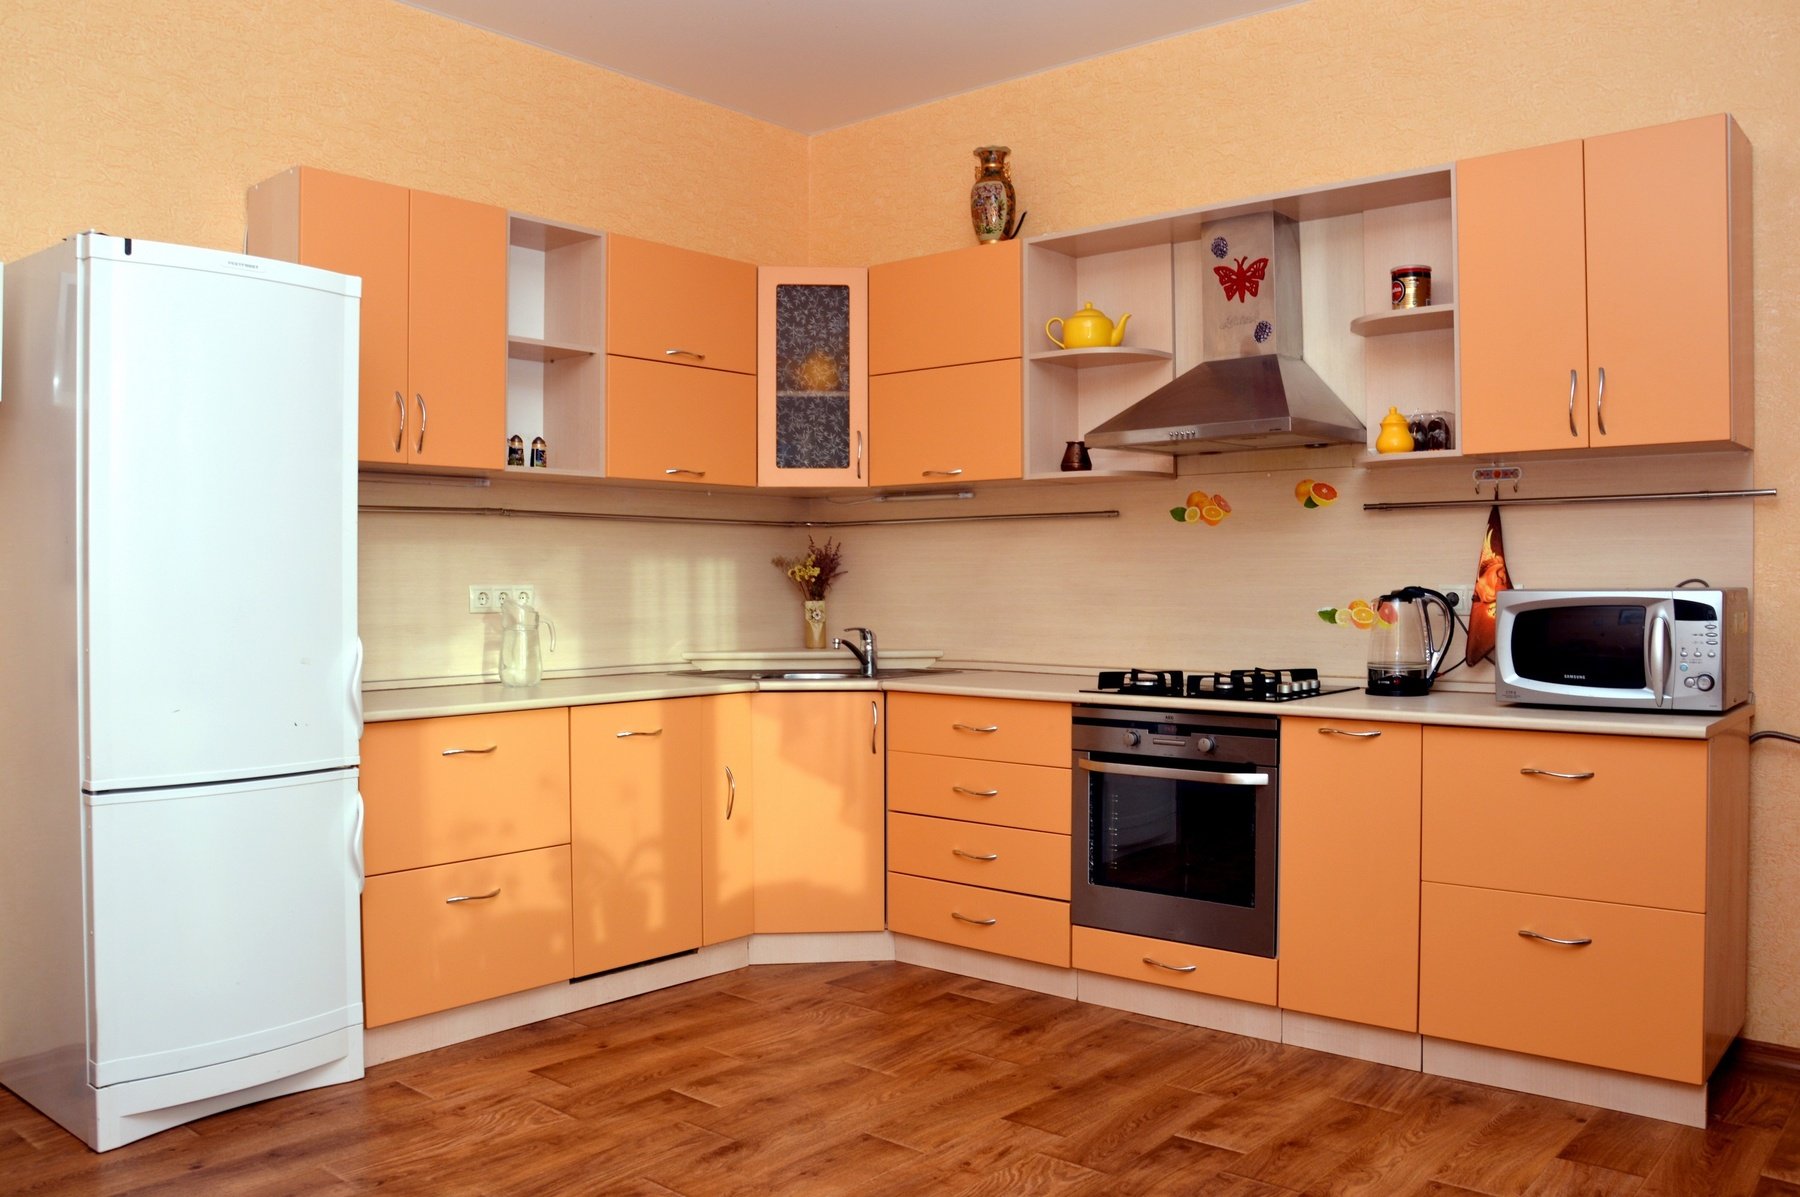 Хорошая простая кухня. Кухня апельсин угловая. Кухонный гарнитур оранжевого цвета. Оранжевая угловая кухня. Персиковый кухонный гарнитур.